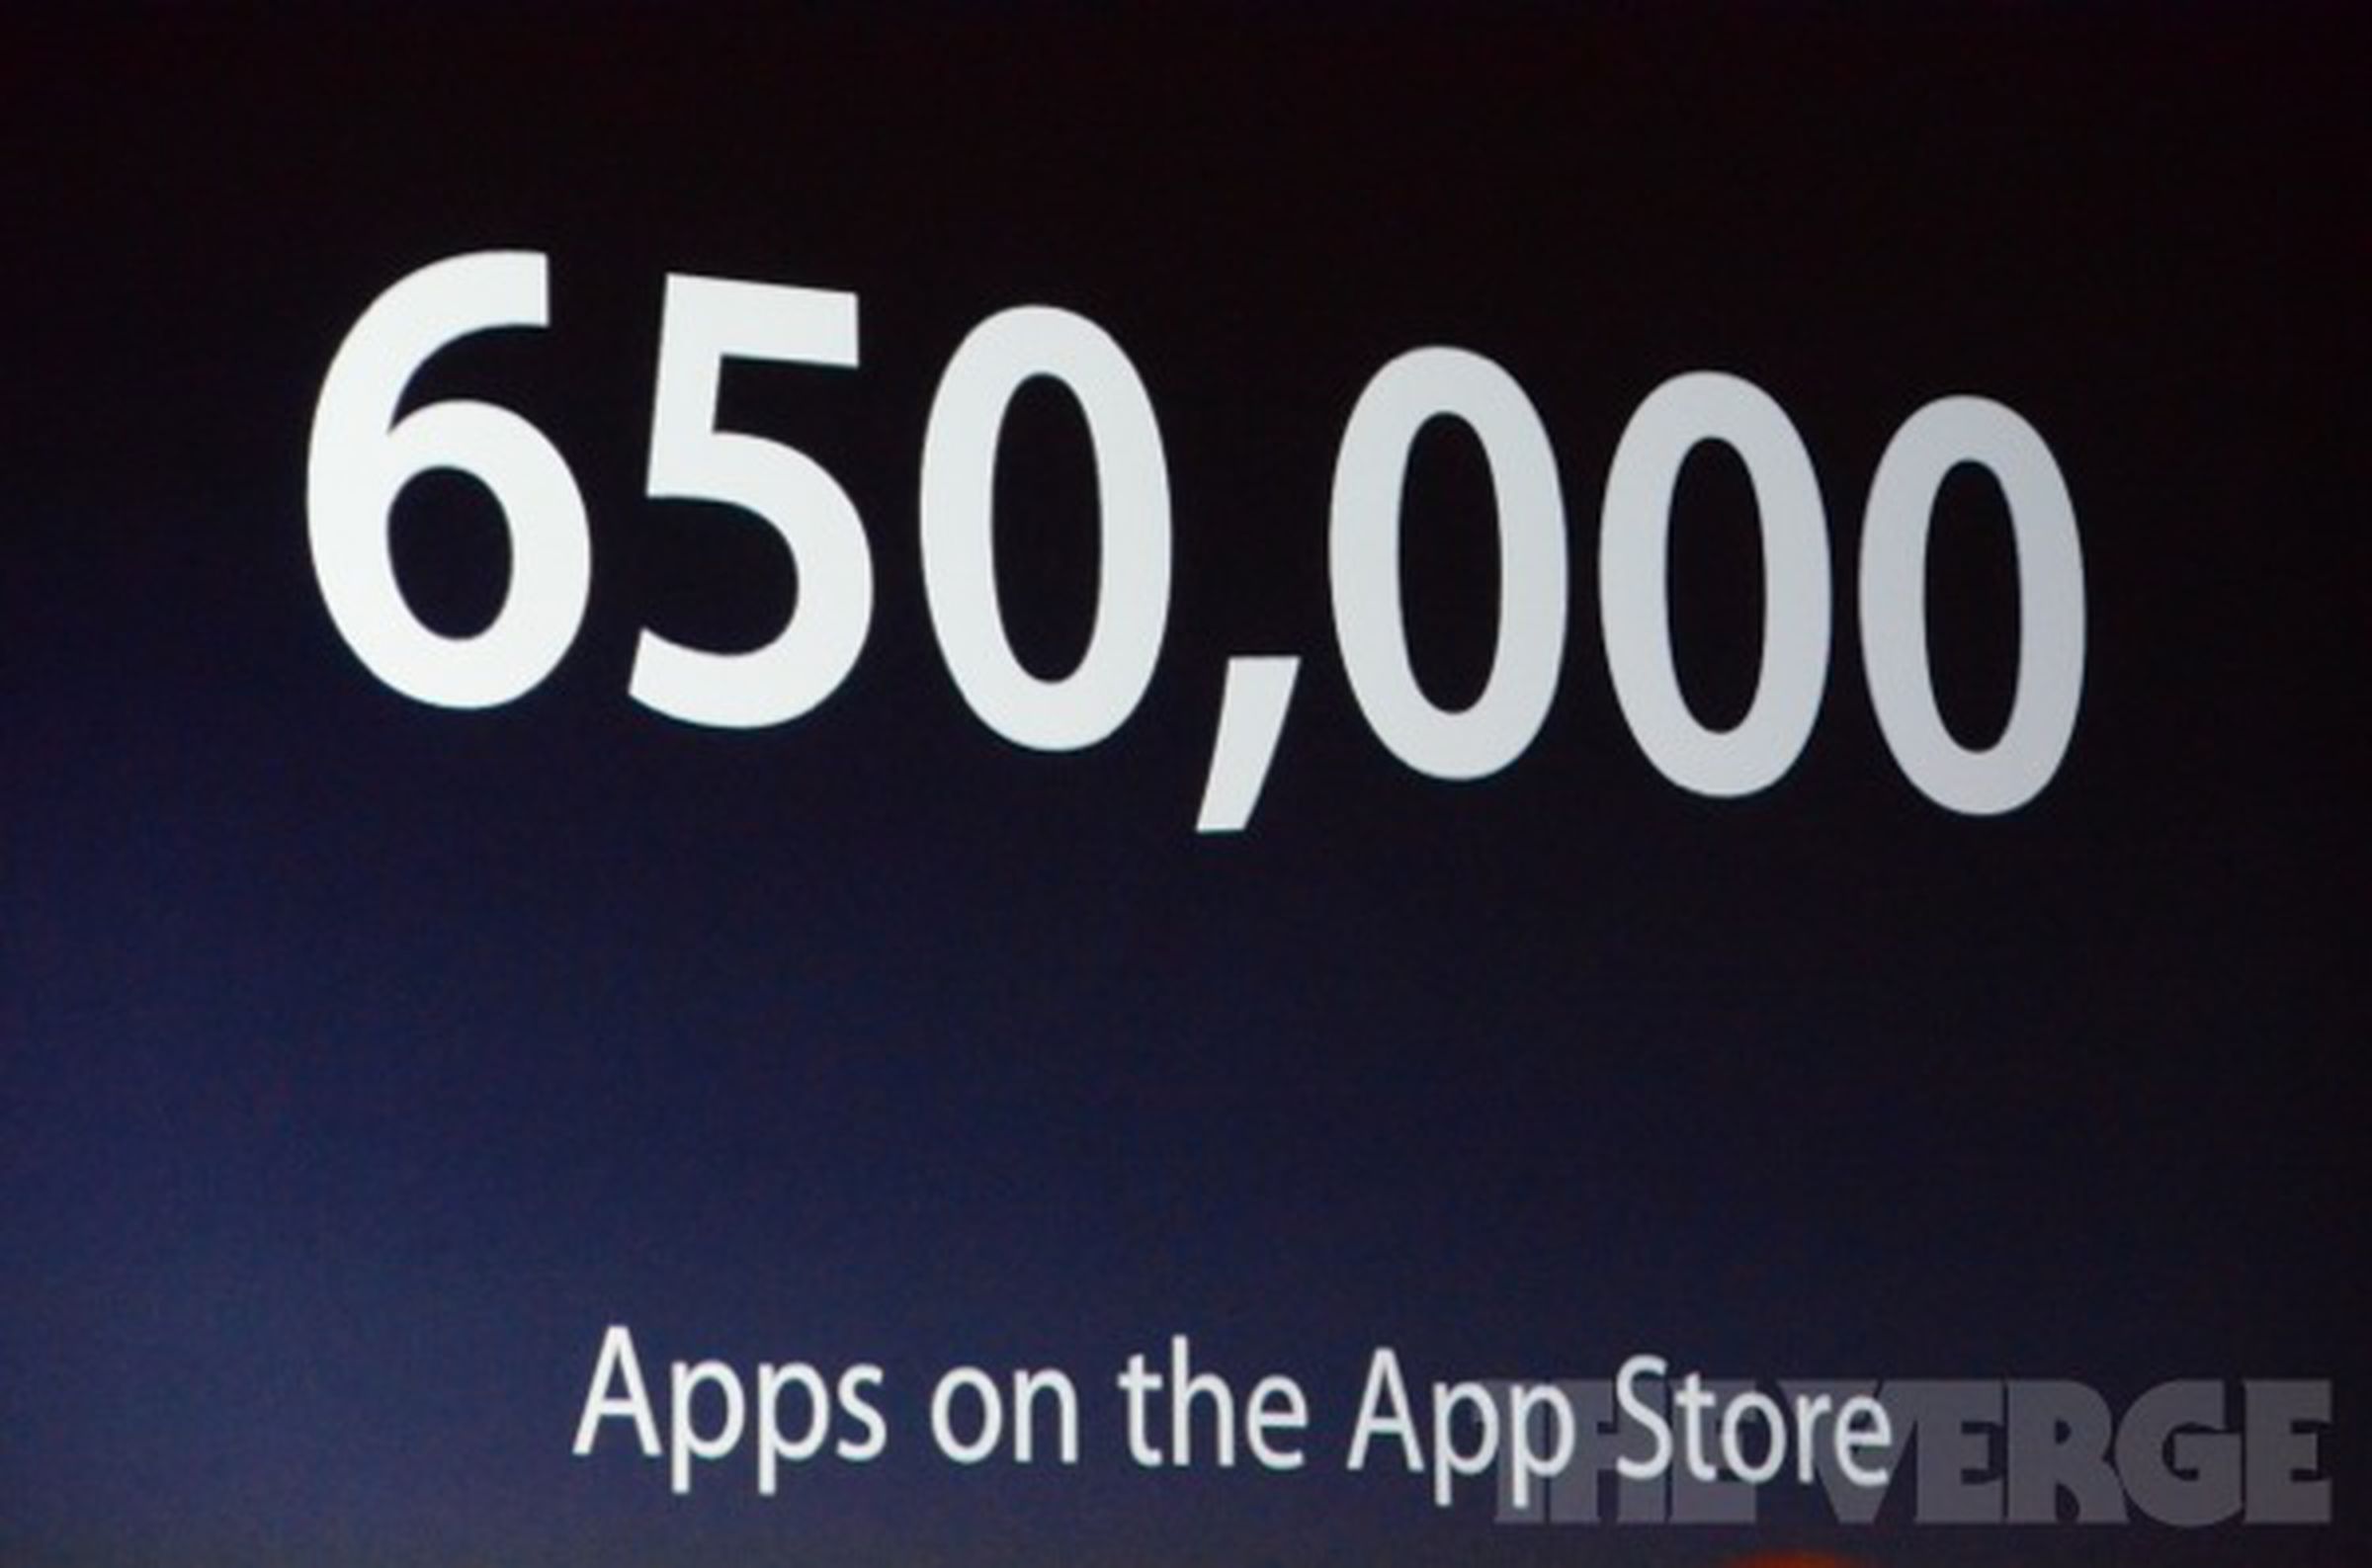 App Store statistics images